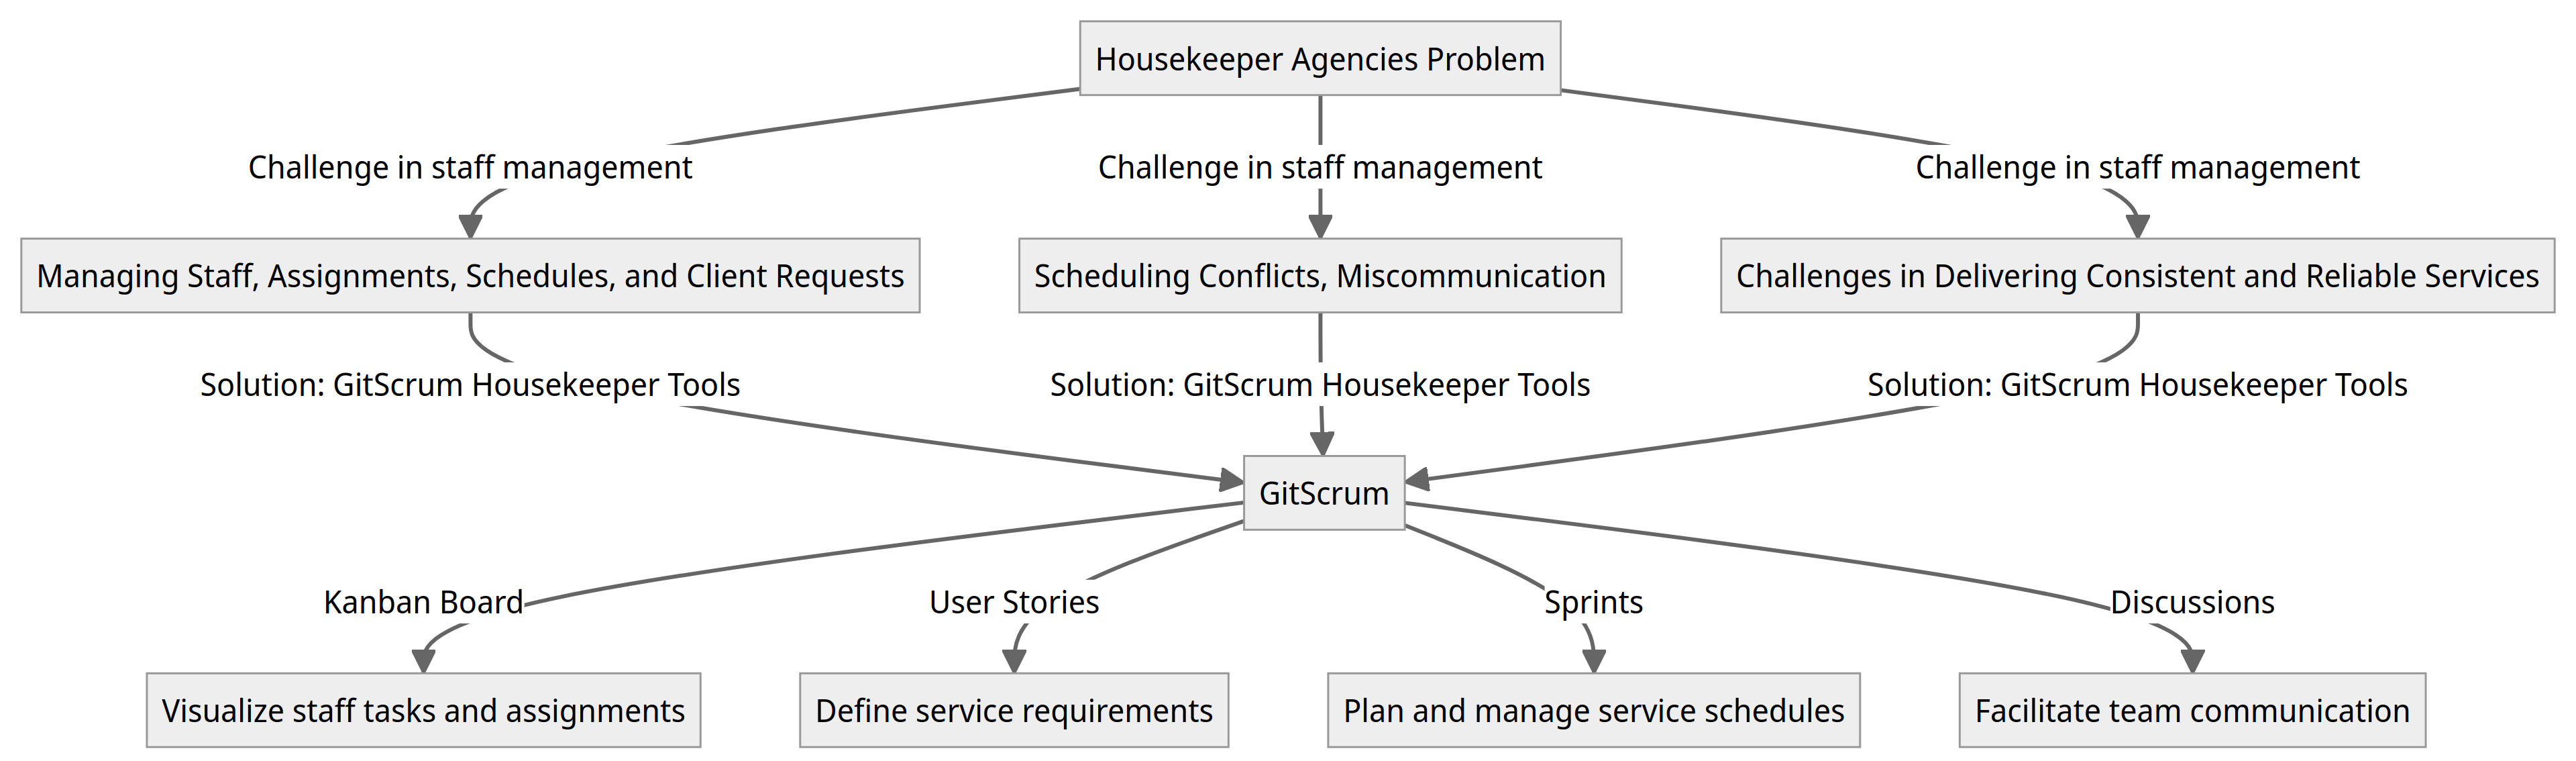 Diagram - Housekeepers Agencies